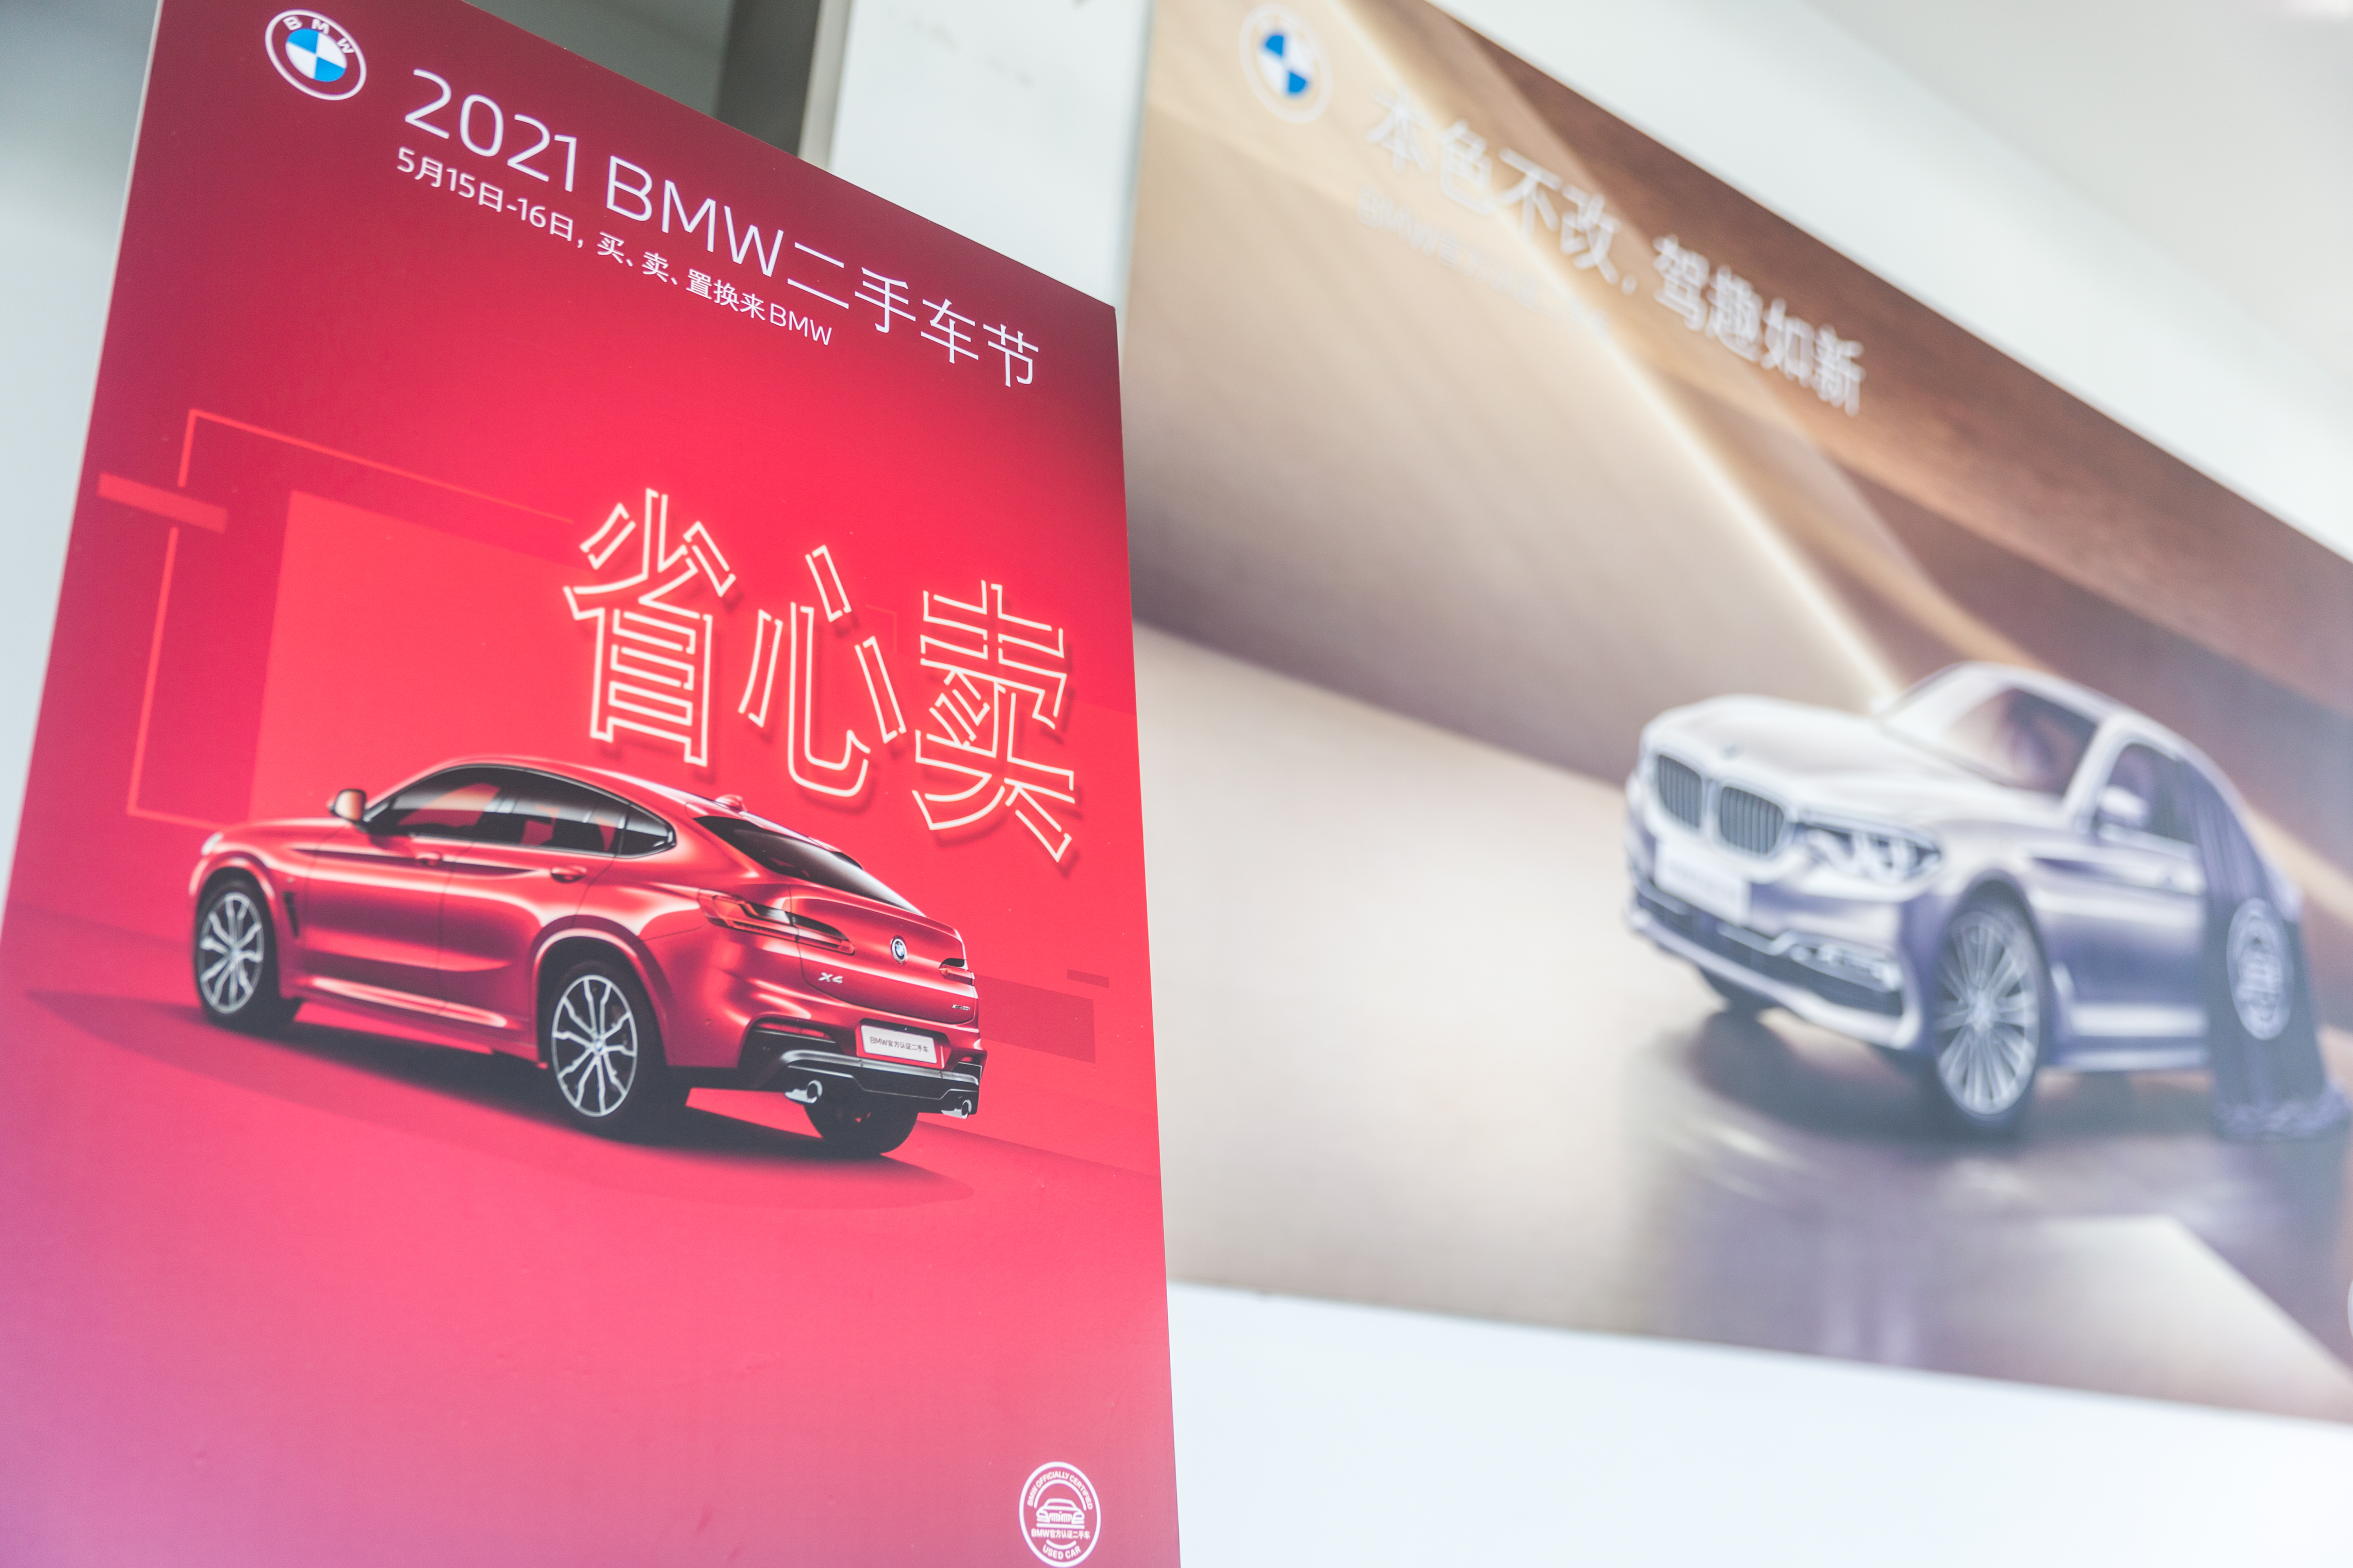 宁波宝昌2021 BMW官方认证二手车节圆满收官